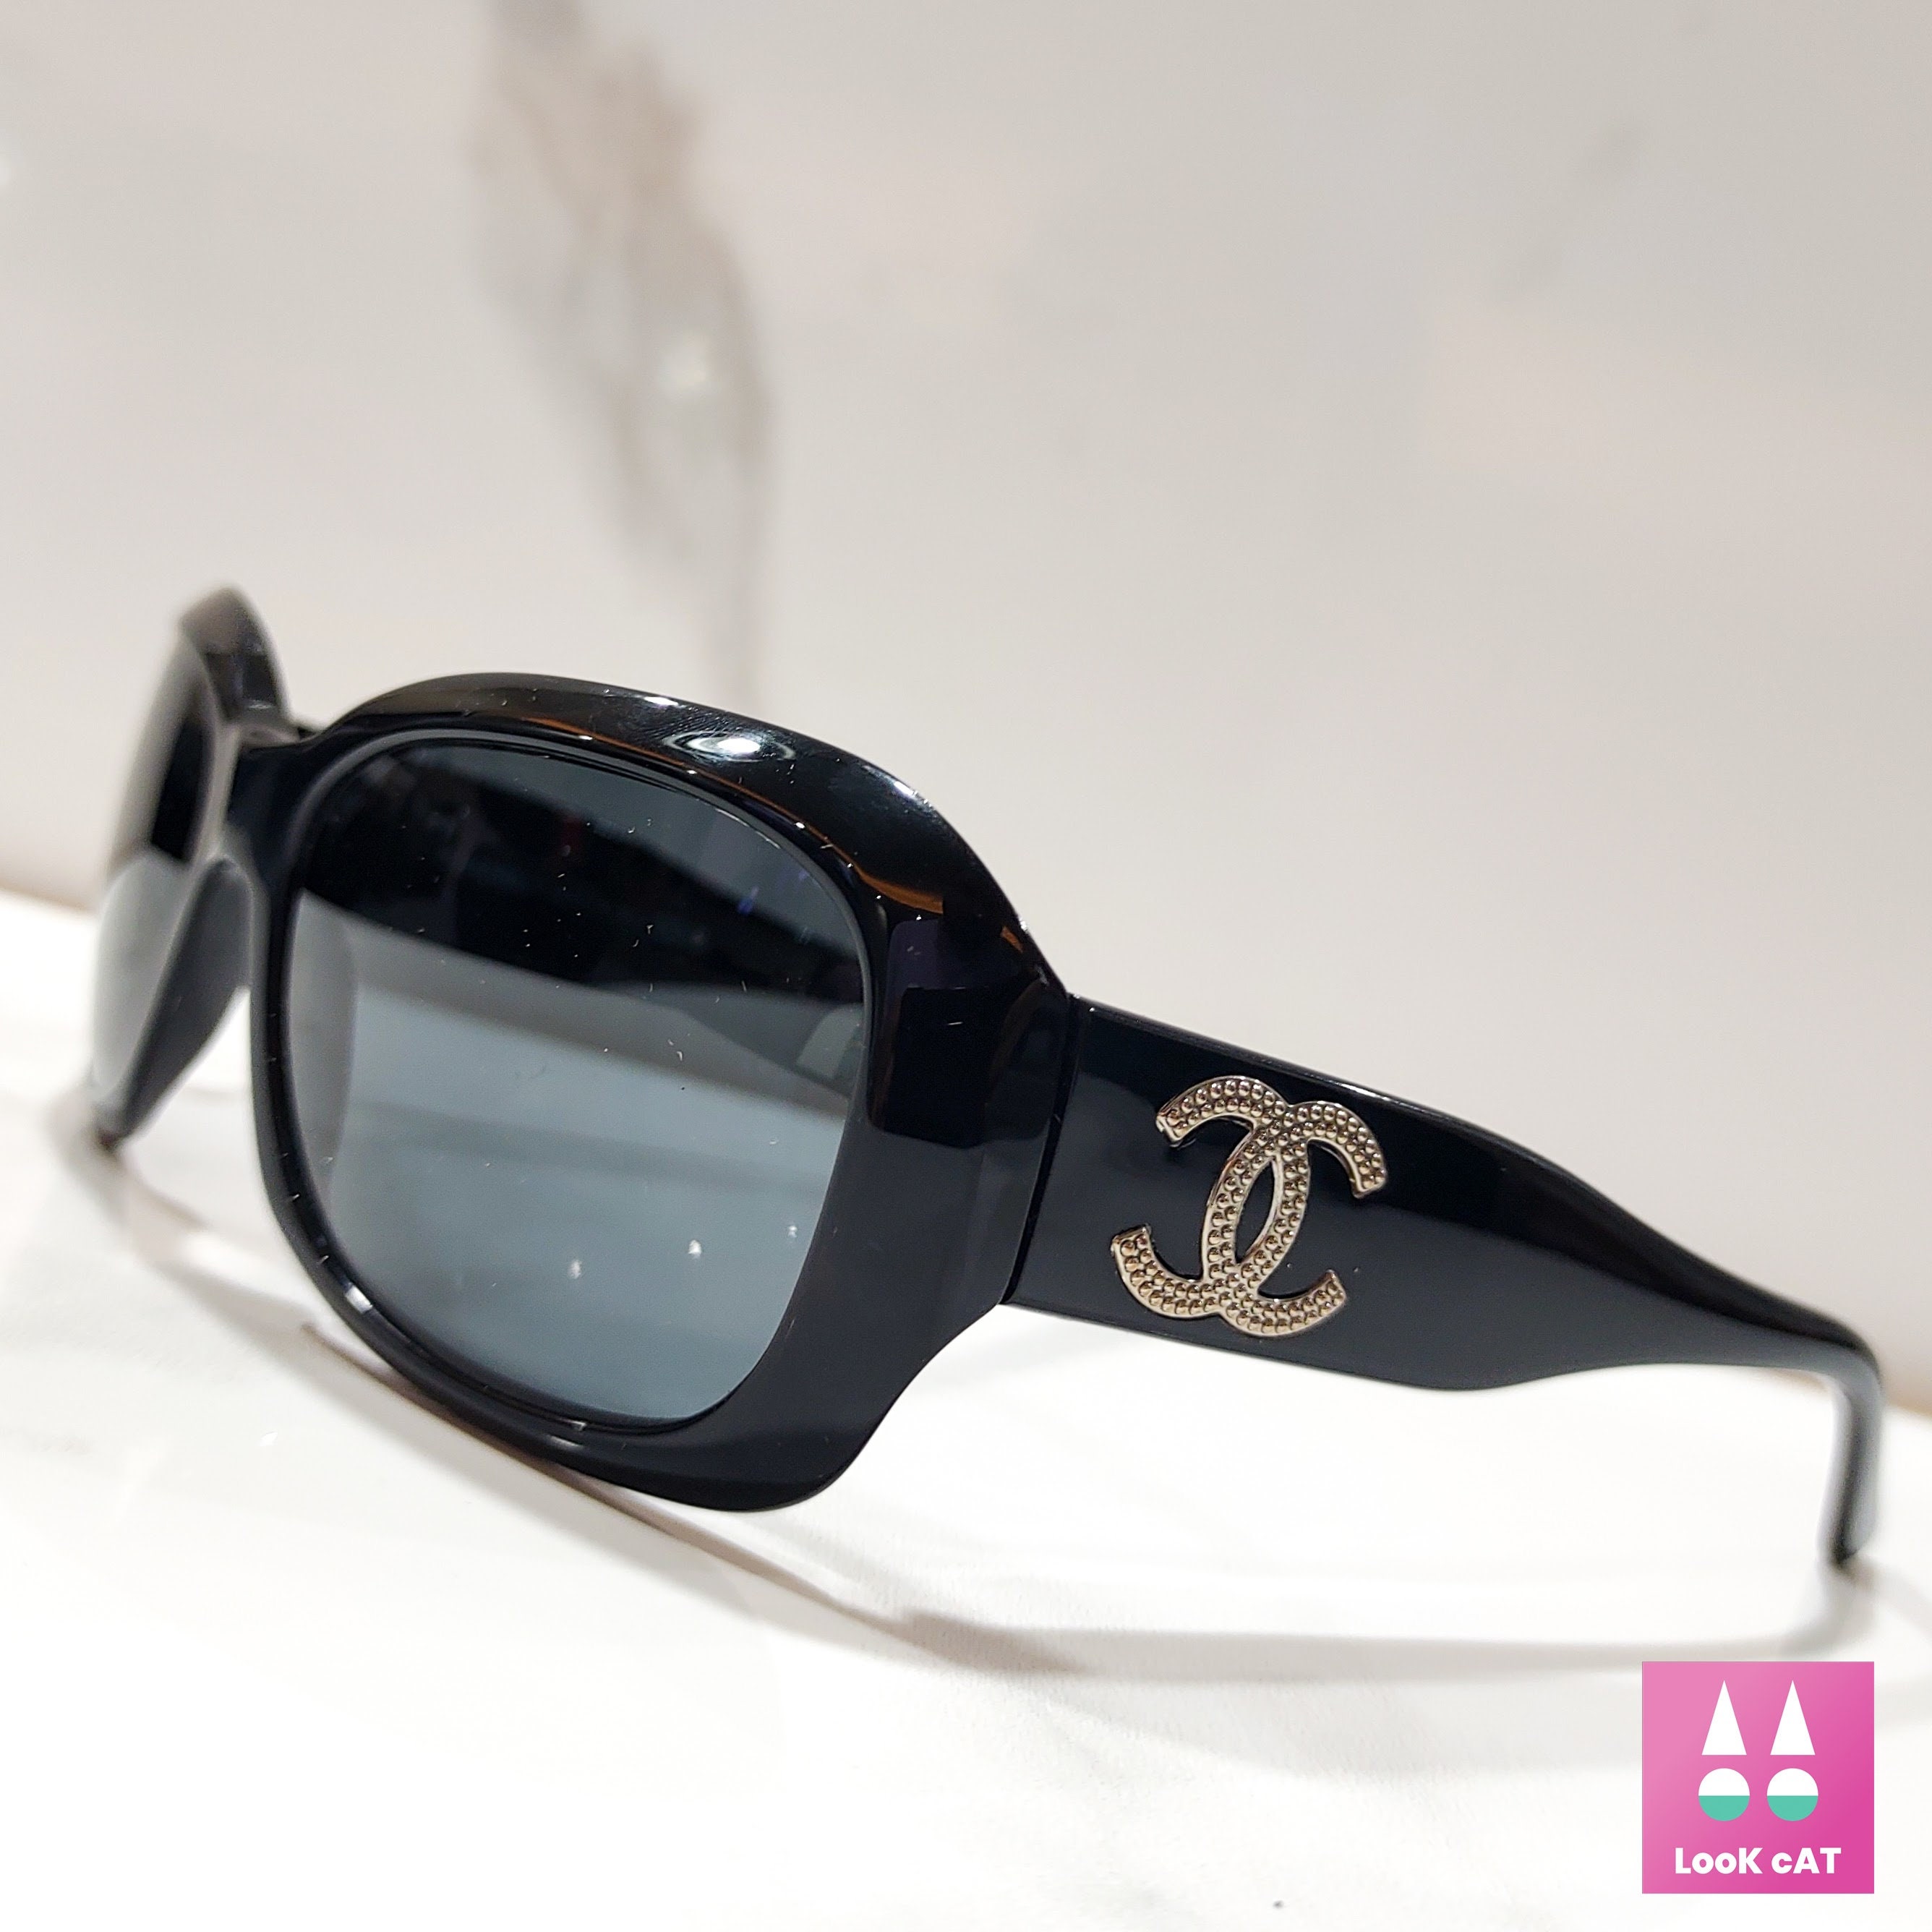 Chanel 5479 Sunglasses Black/Grey Square Women